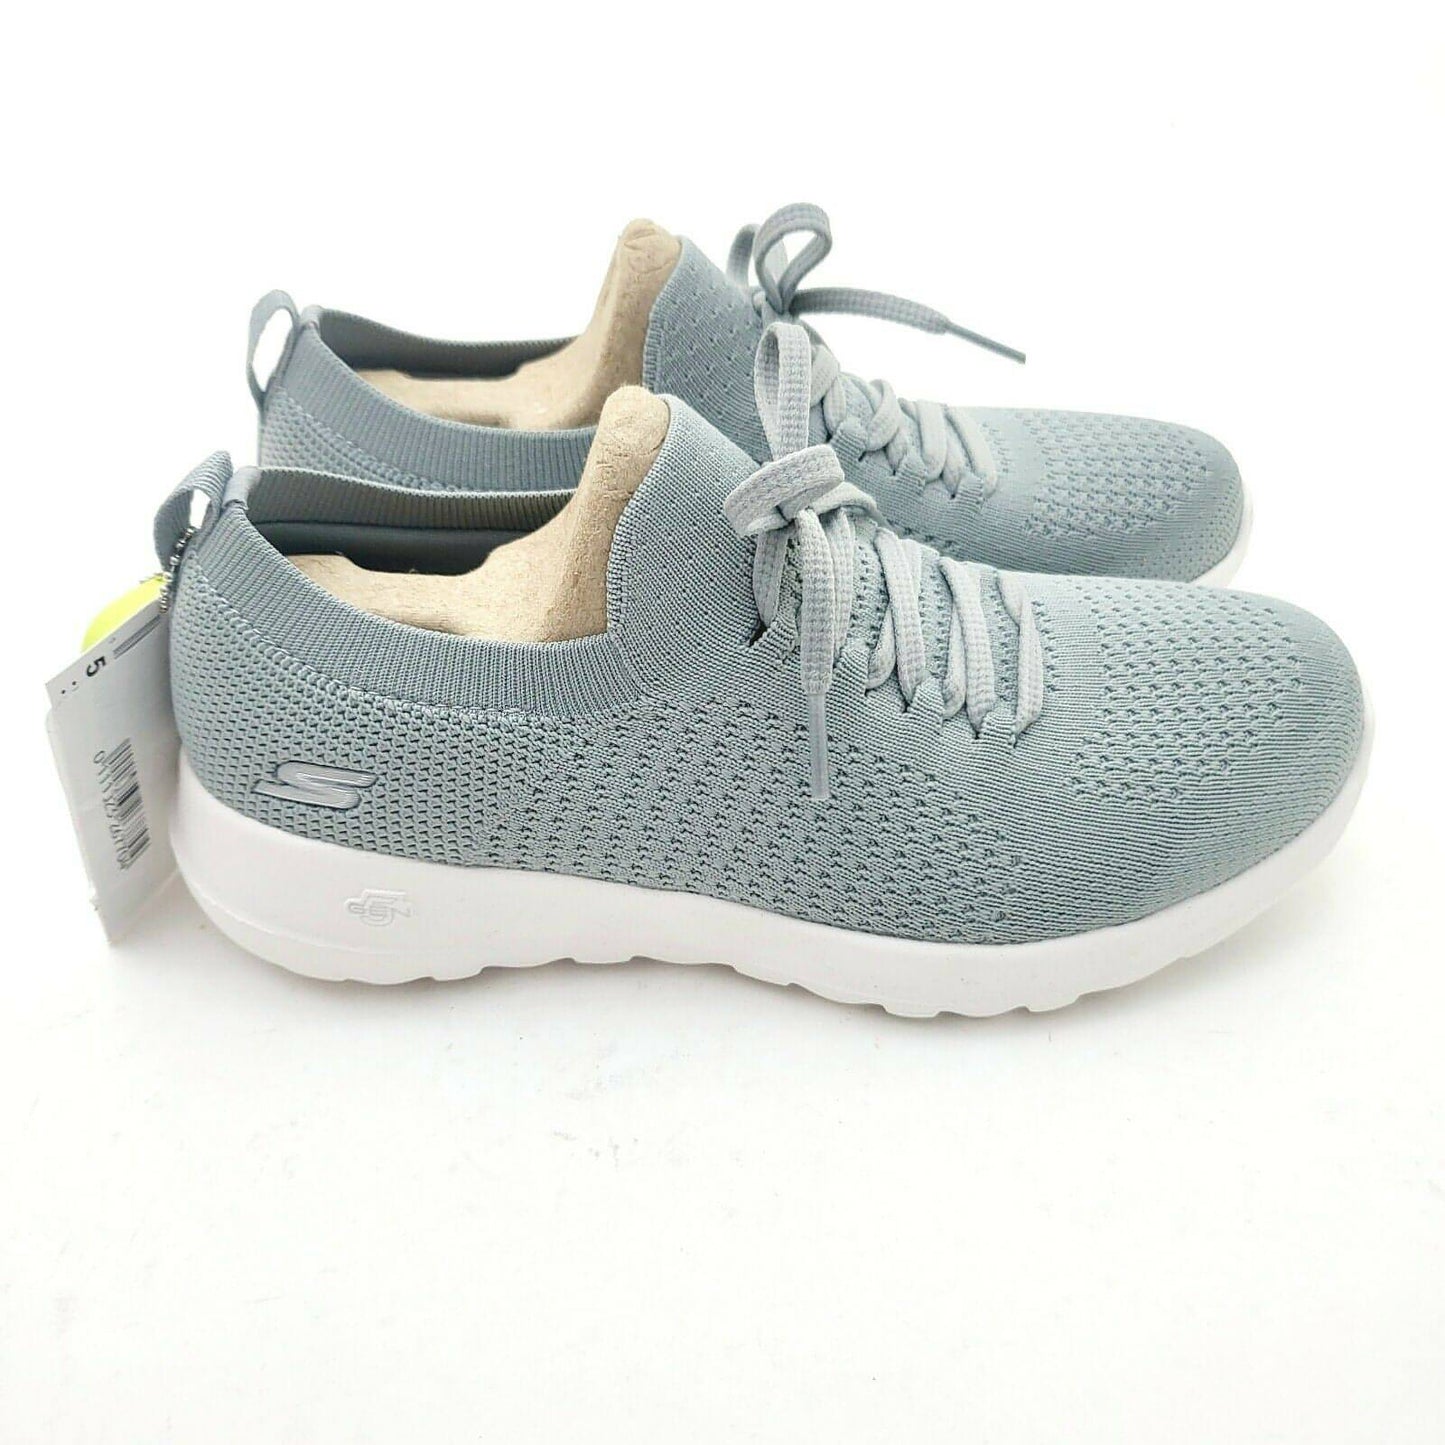 SKECHERS Women's GO Walk Joy Fresh View Mesh Sneakers Slip On Shoe (Grey) - Brandat Outlet